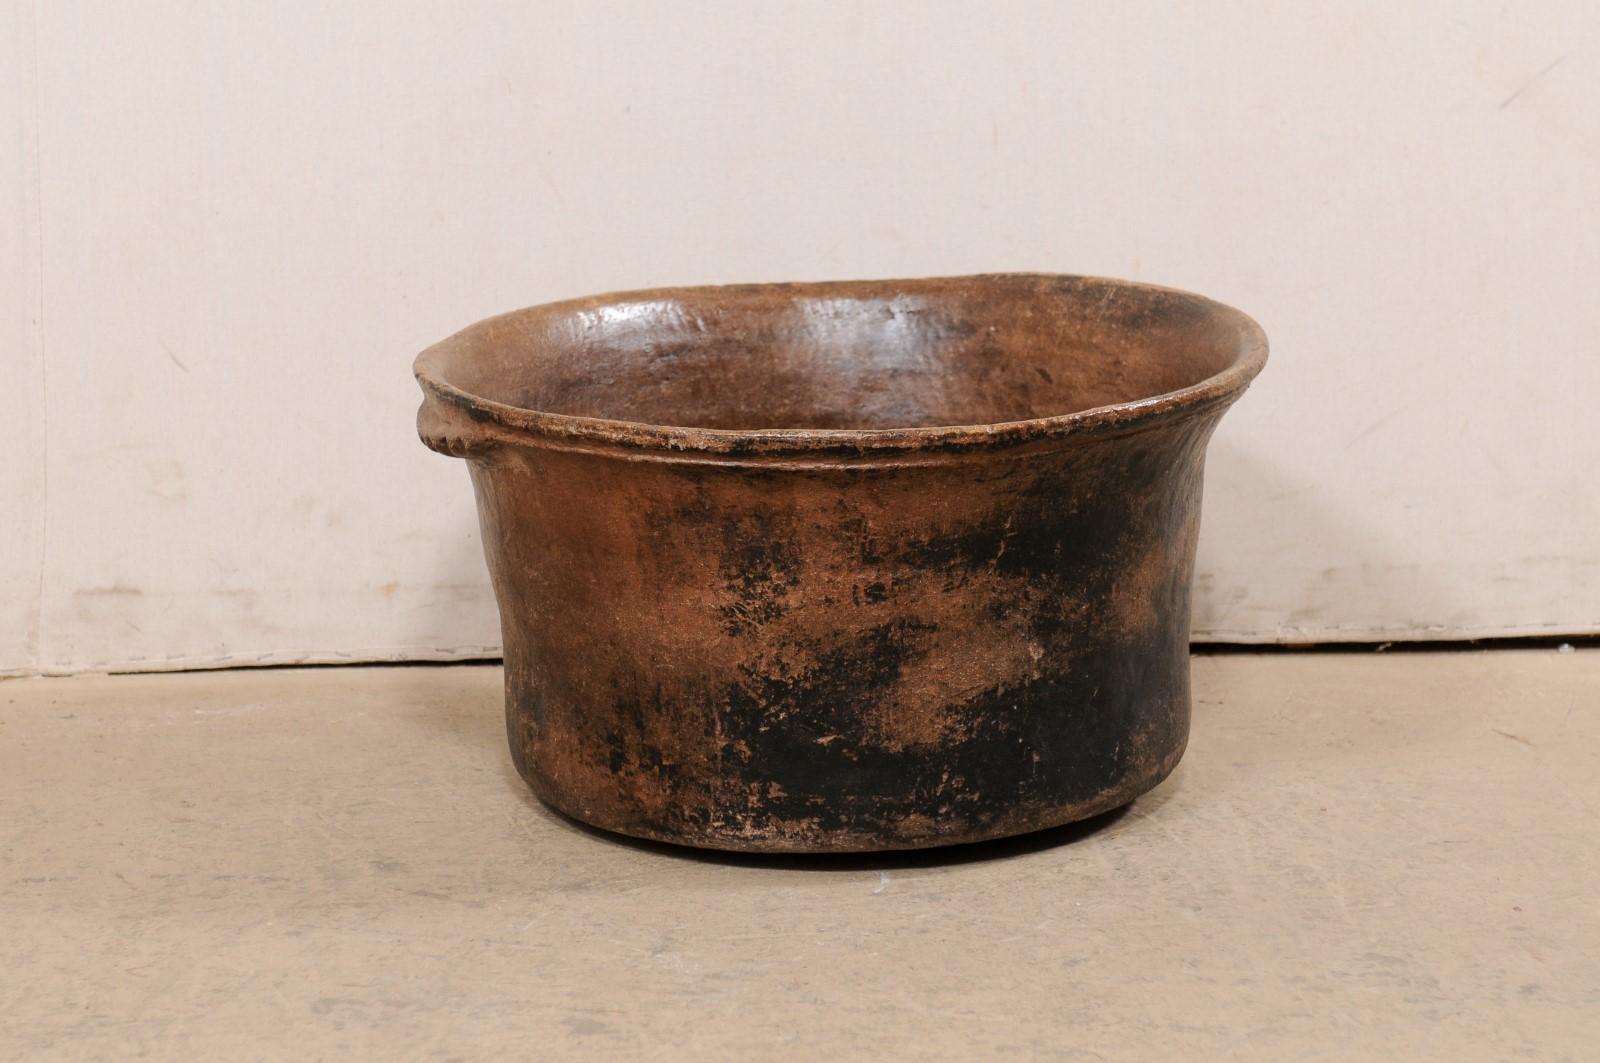 Ein spanischer Kolonialkochtopf aus dem frühen 20. Jahrhundert, Mittelamerika. Dieses antike Kochgefäß ist aus Ton gefertigt, hat eine runde Form und wird von zwei flachen Henkeln mit Wellenschliff flankiert. Der warme braune Ton hat eine wunderbare